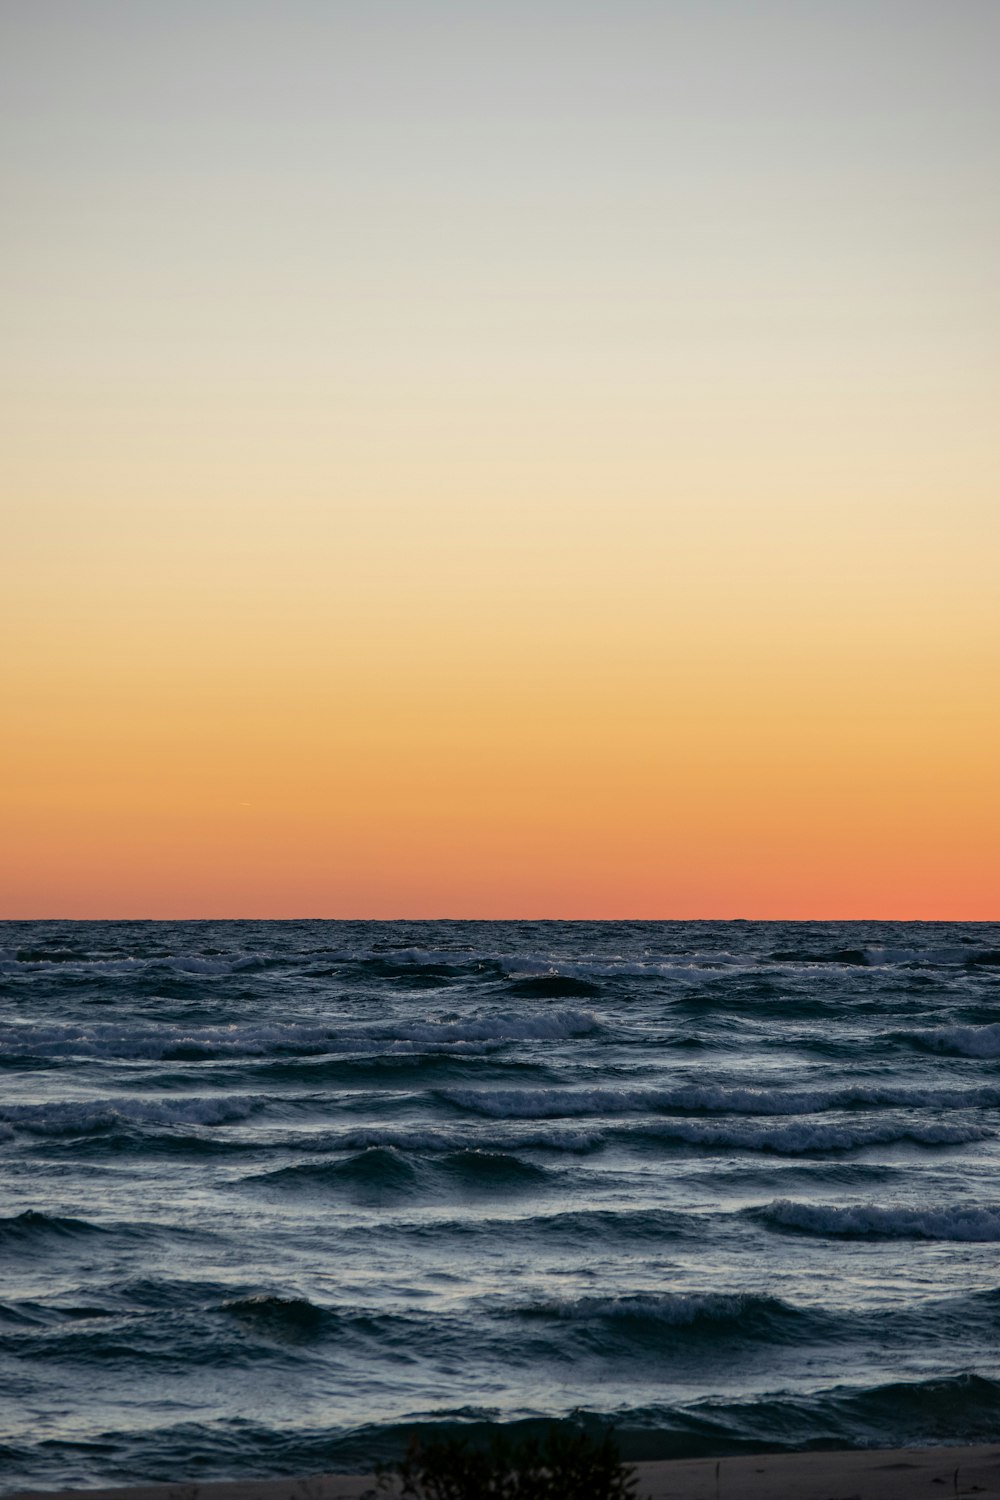 sea and horizon view